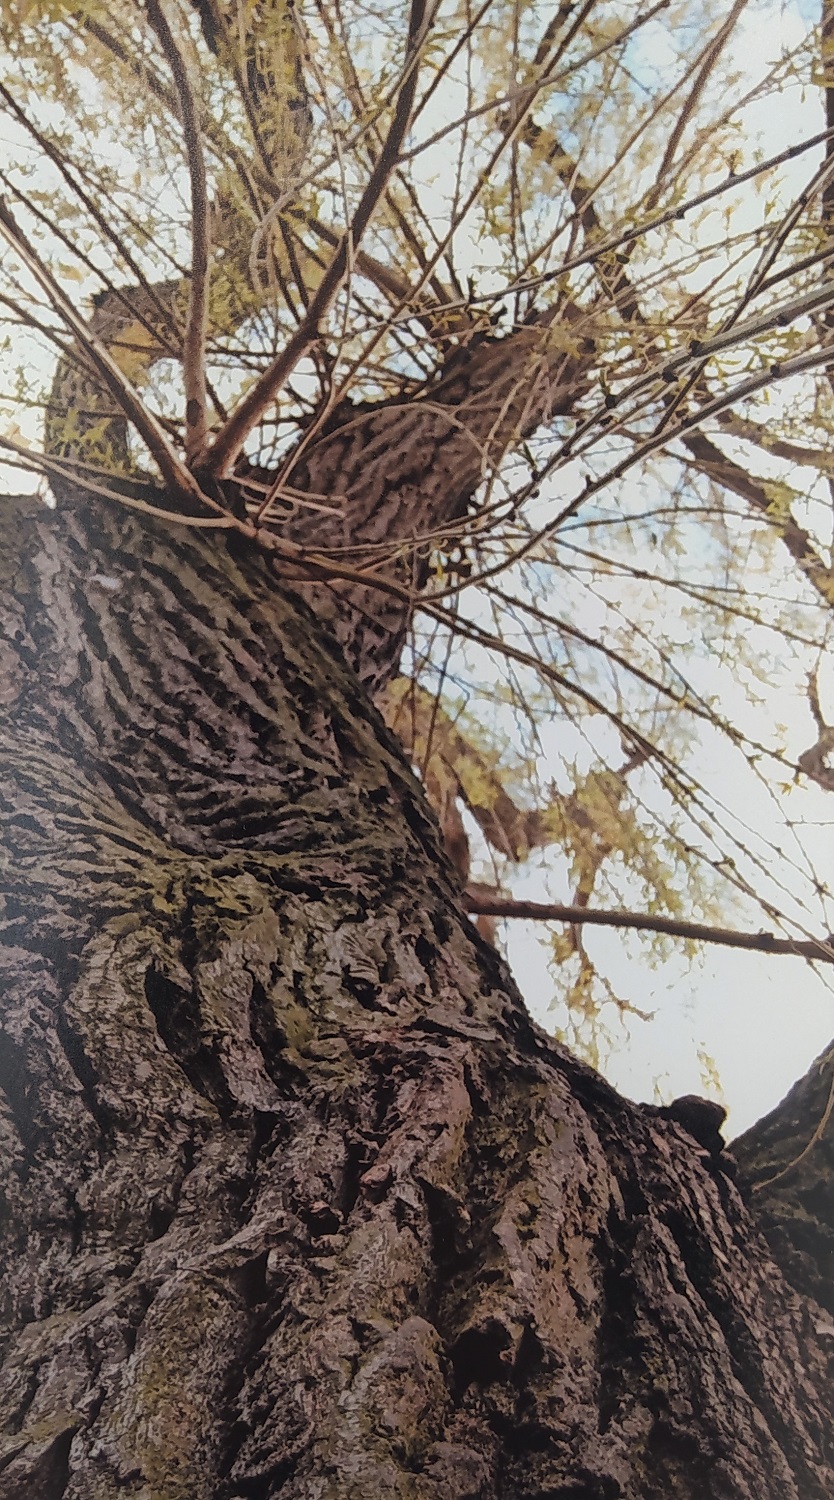 Klorowye zdjęcie przedstawiające widziane od dołu drzewo na tle nieba.